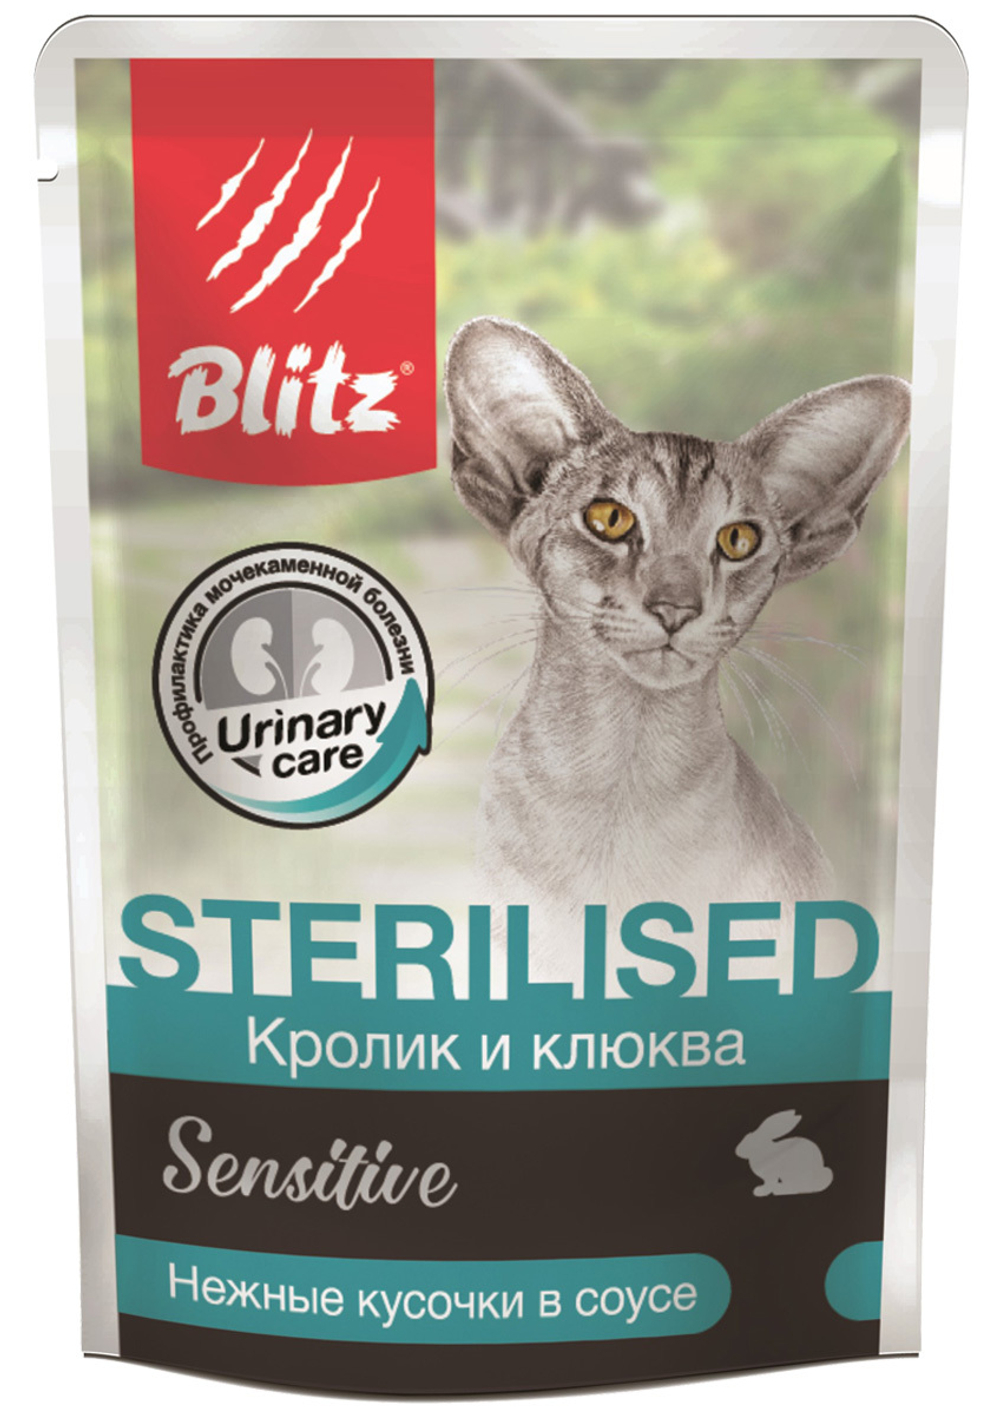 Blitz Sensitive «Кролик и клюква» в соусе для стерилизованных кошек